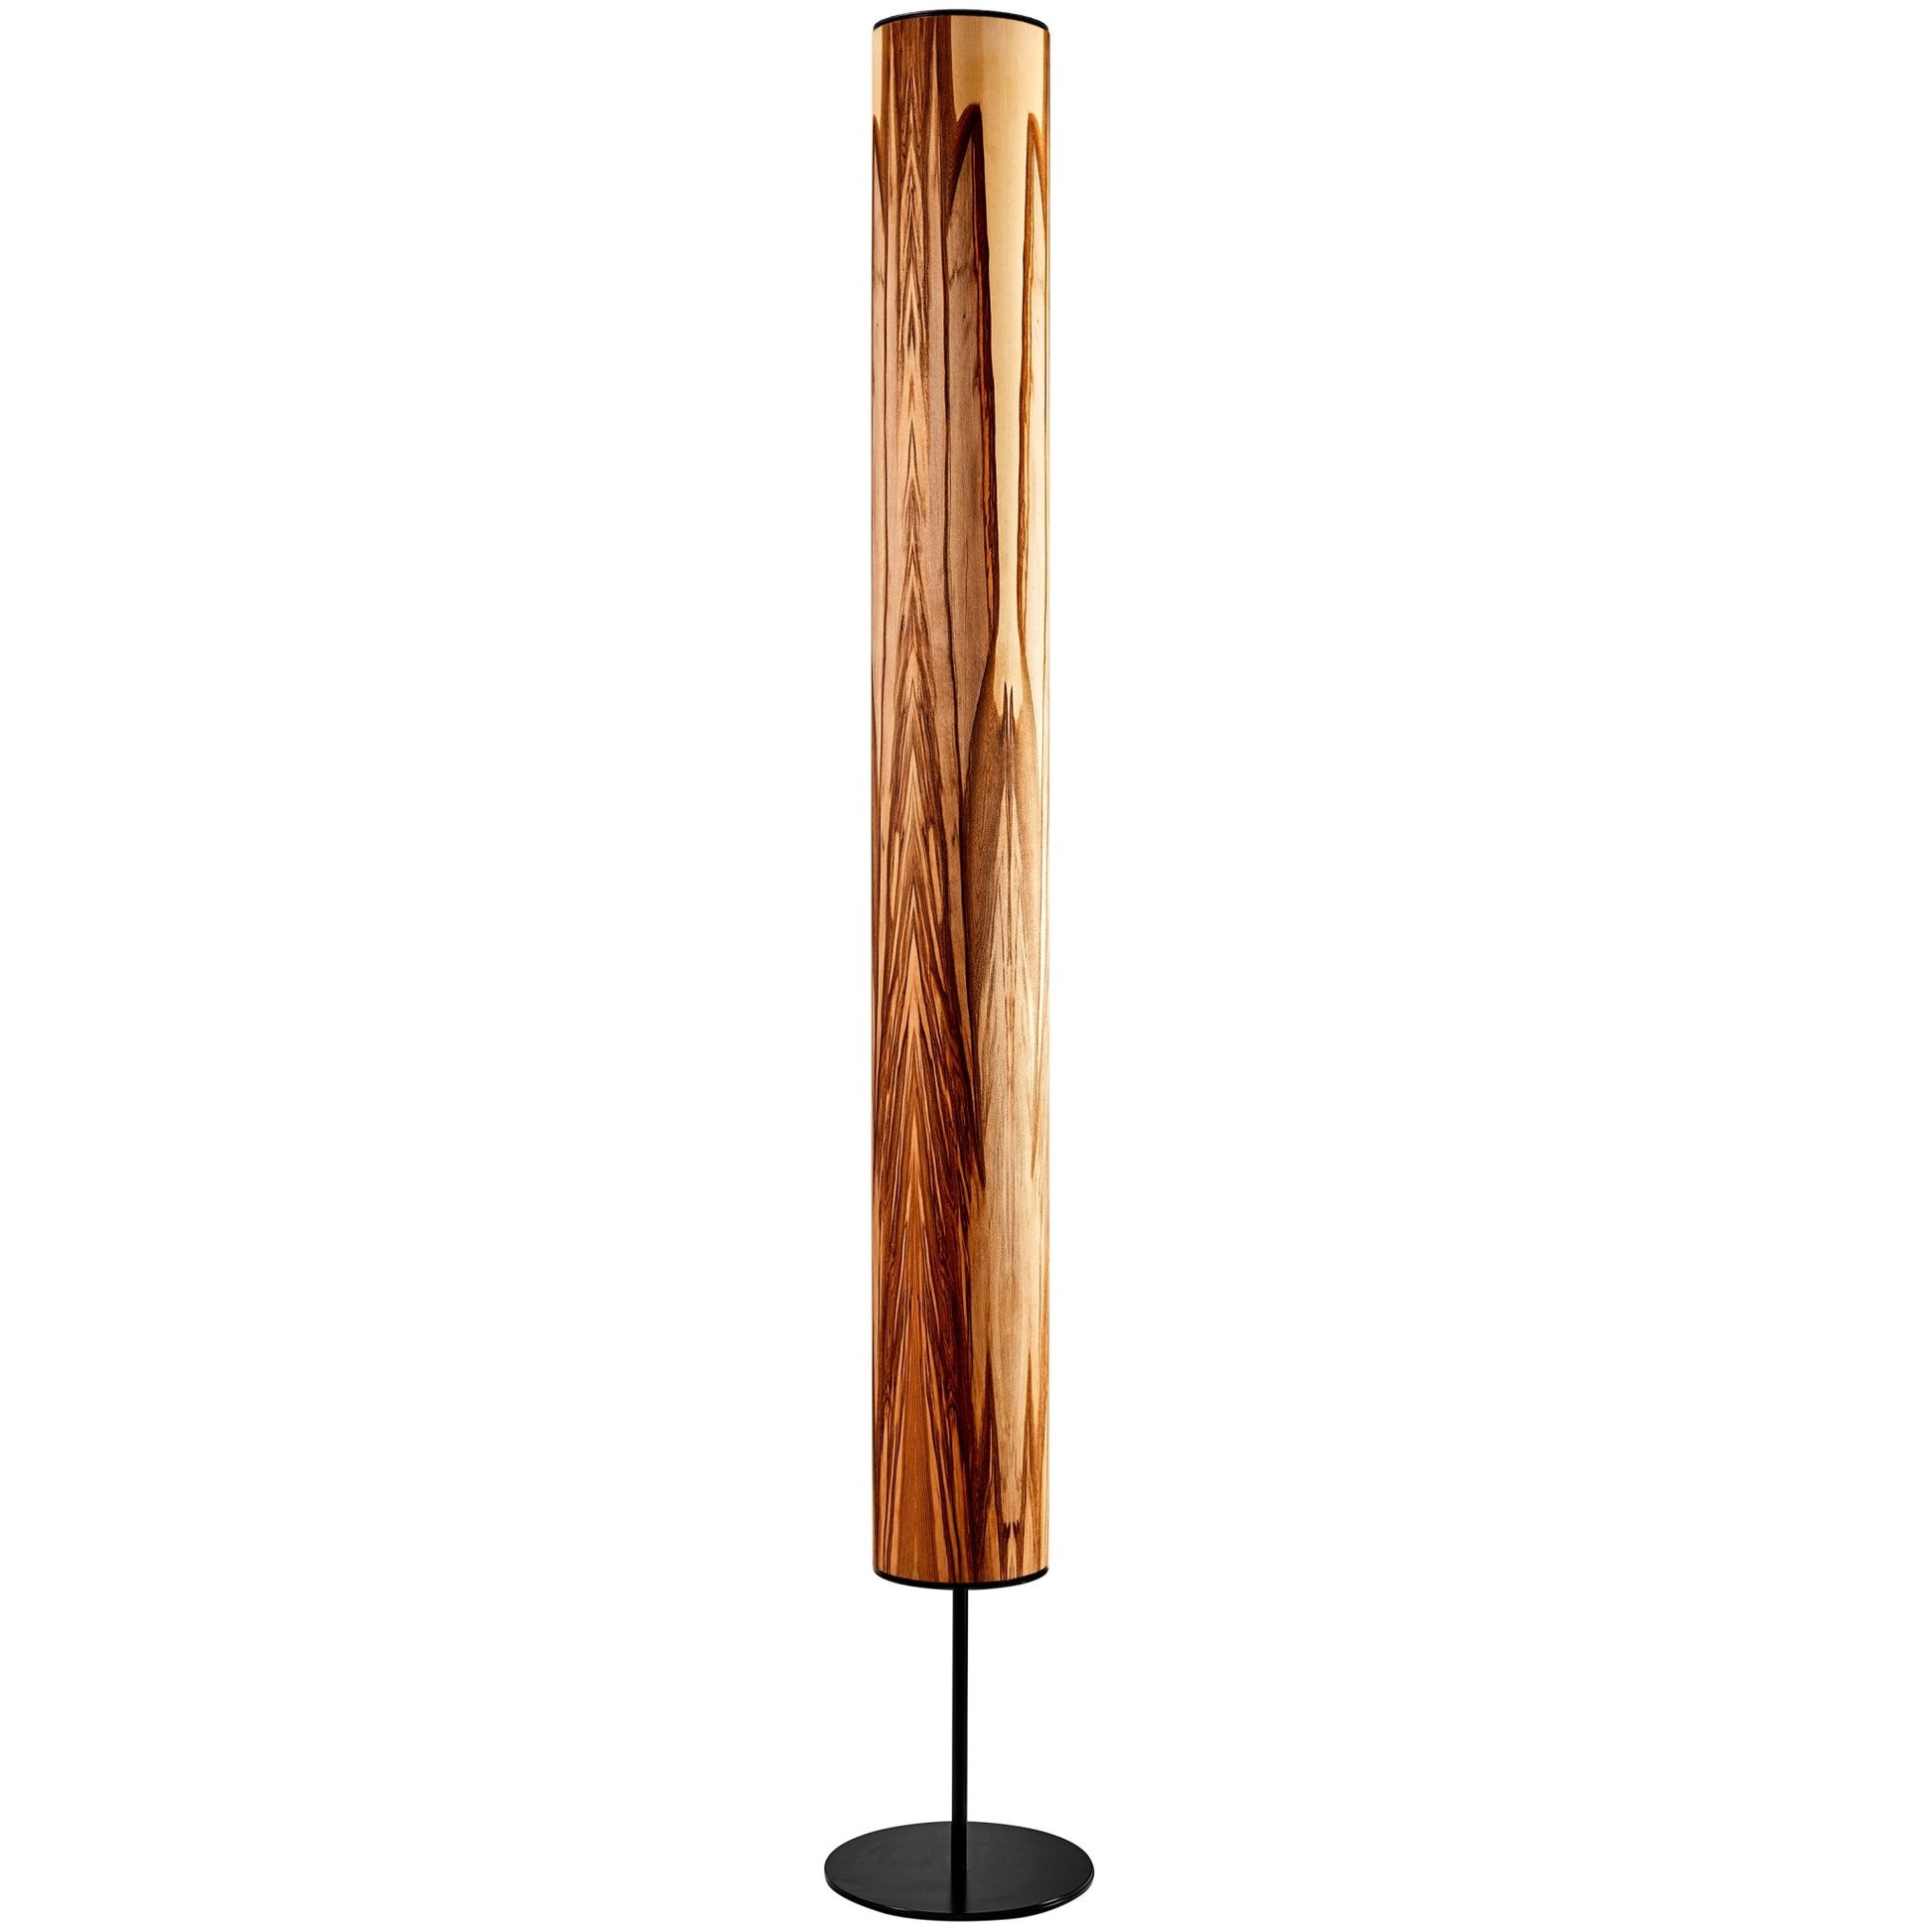 | Lampe Holzfurnier – Arbor Leuchtnatur Stehlampe Satin Nussbaum